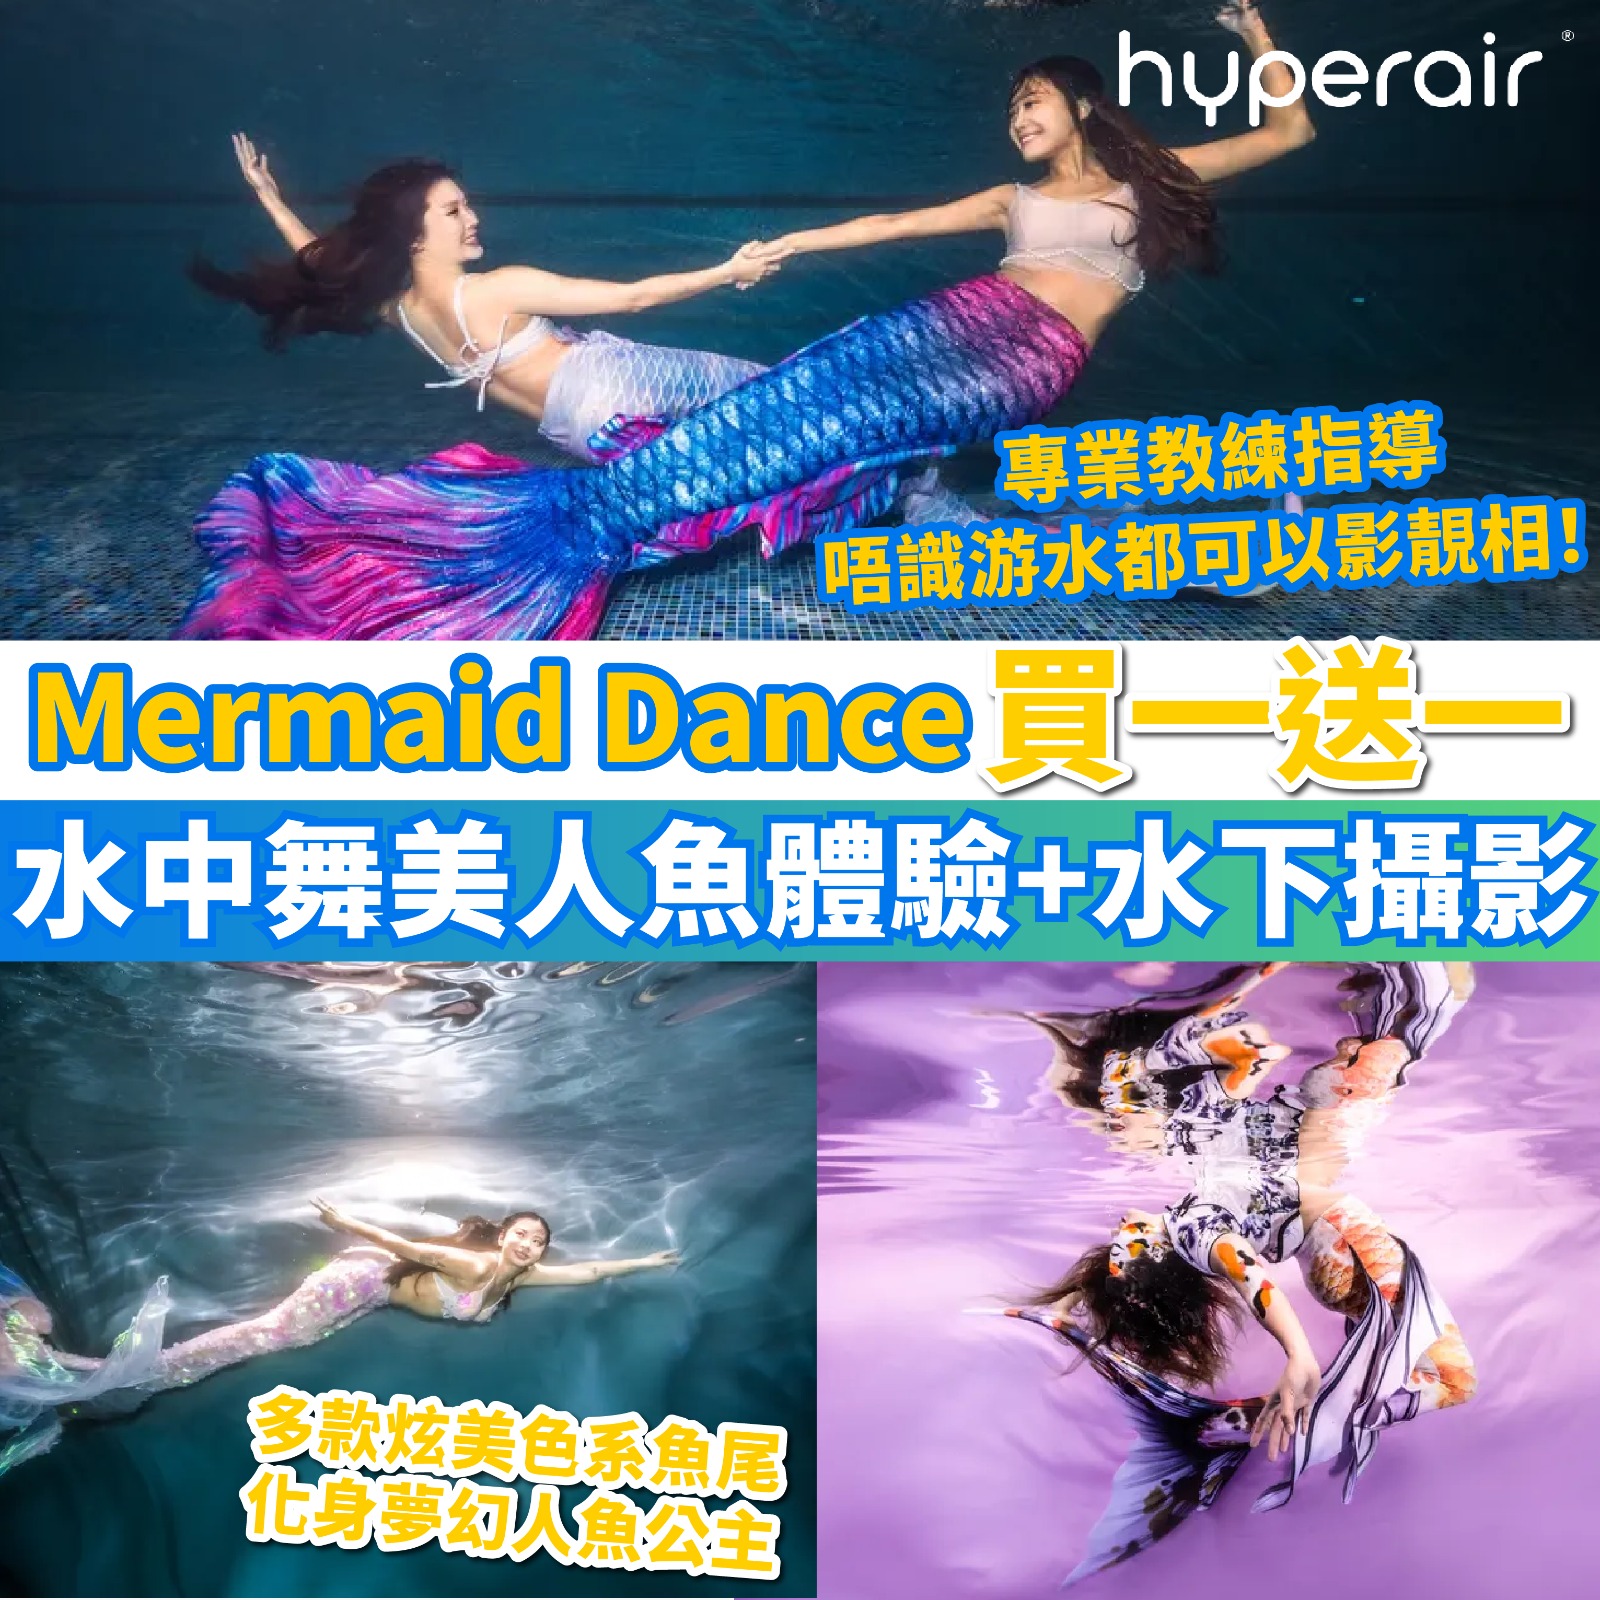 3月14日 6PM Mermaid Dance 水中舞美人魚體驗及水下攝影 ，必搶買一送一優惠